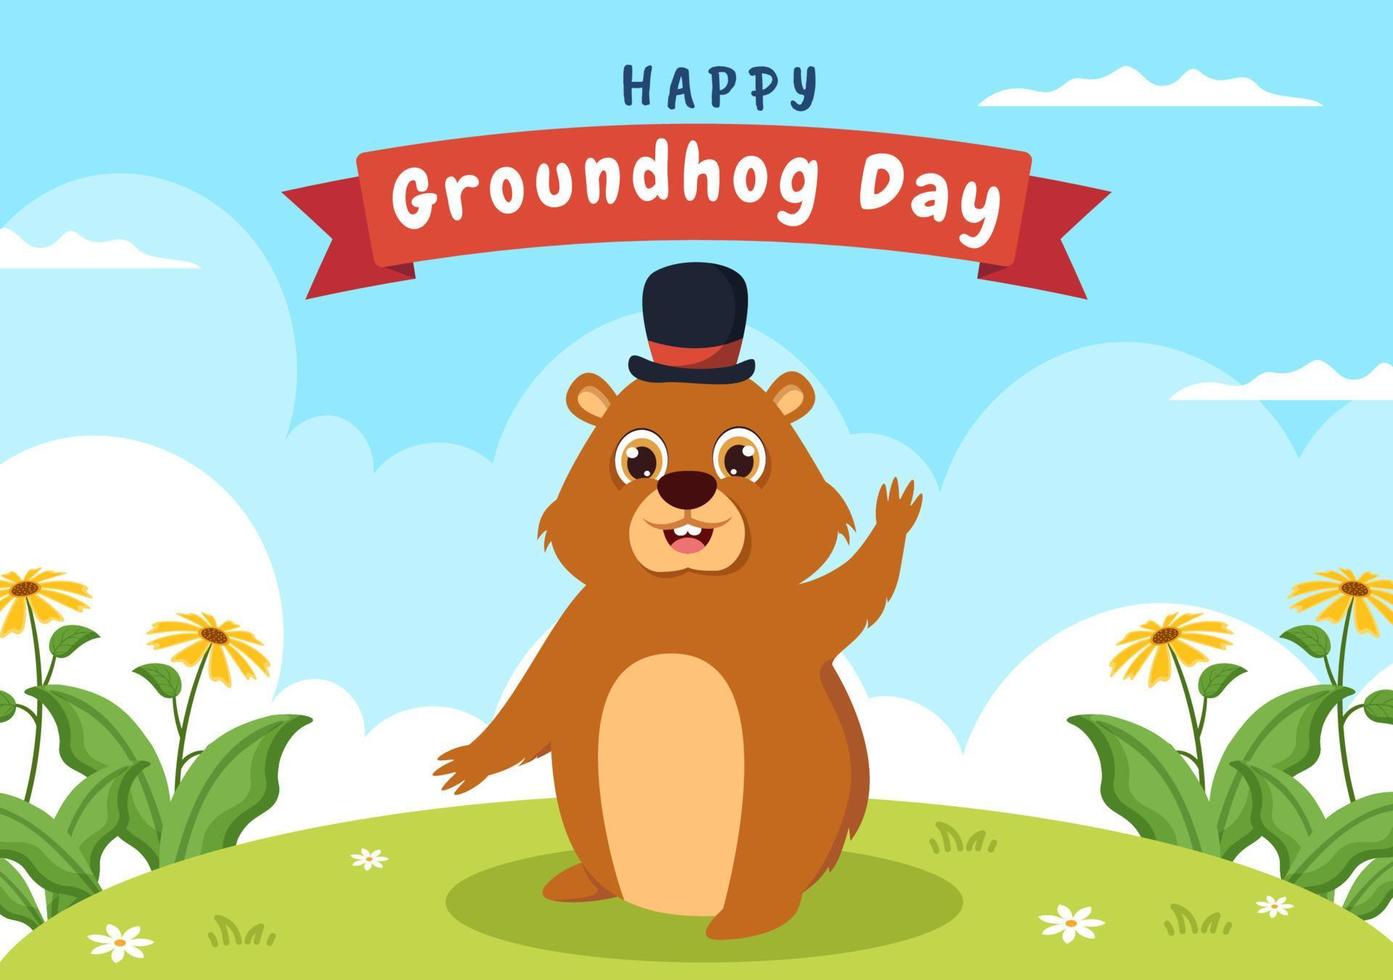 feliz día de la marmota el 2 de febrero con lindo personaje de marmota y plantilla de fondo de jardín ilustración plana de dibujos animados dibujados a mano vector